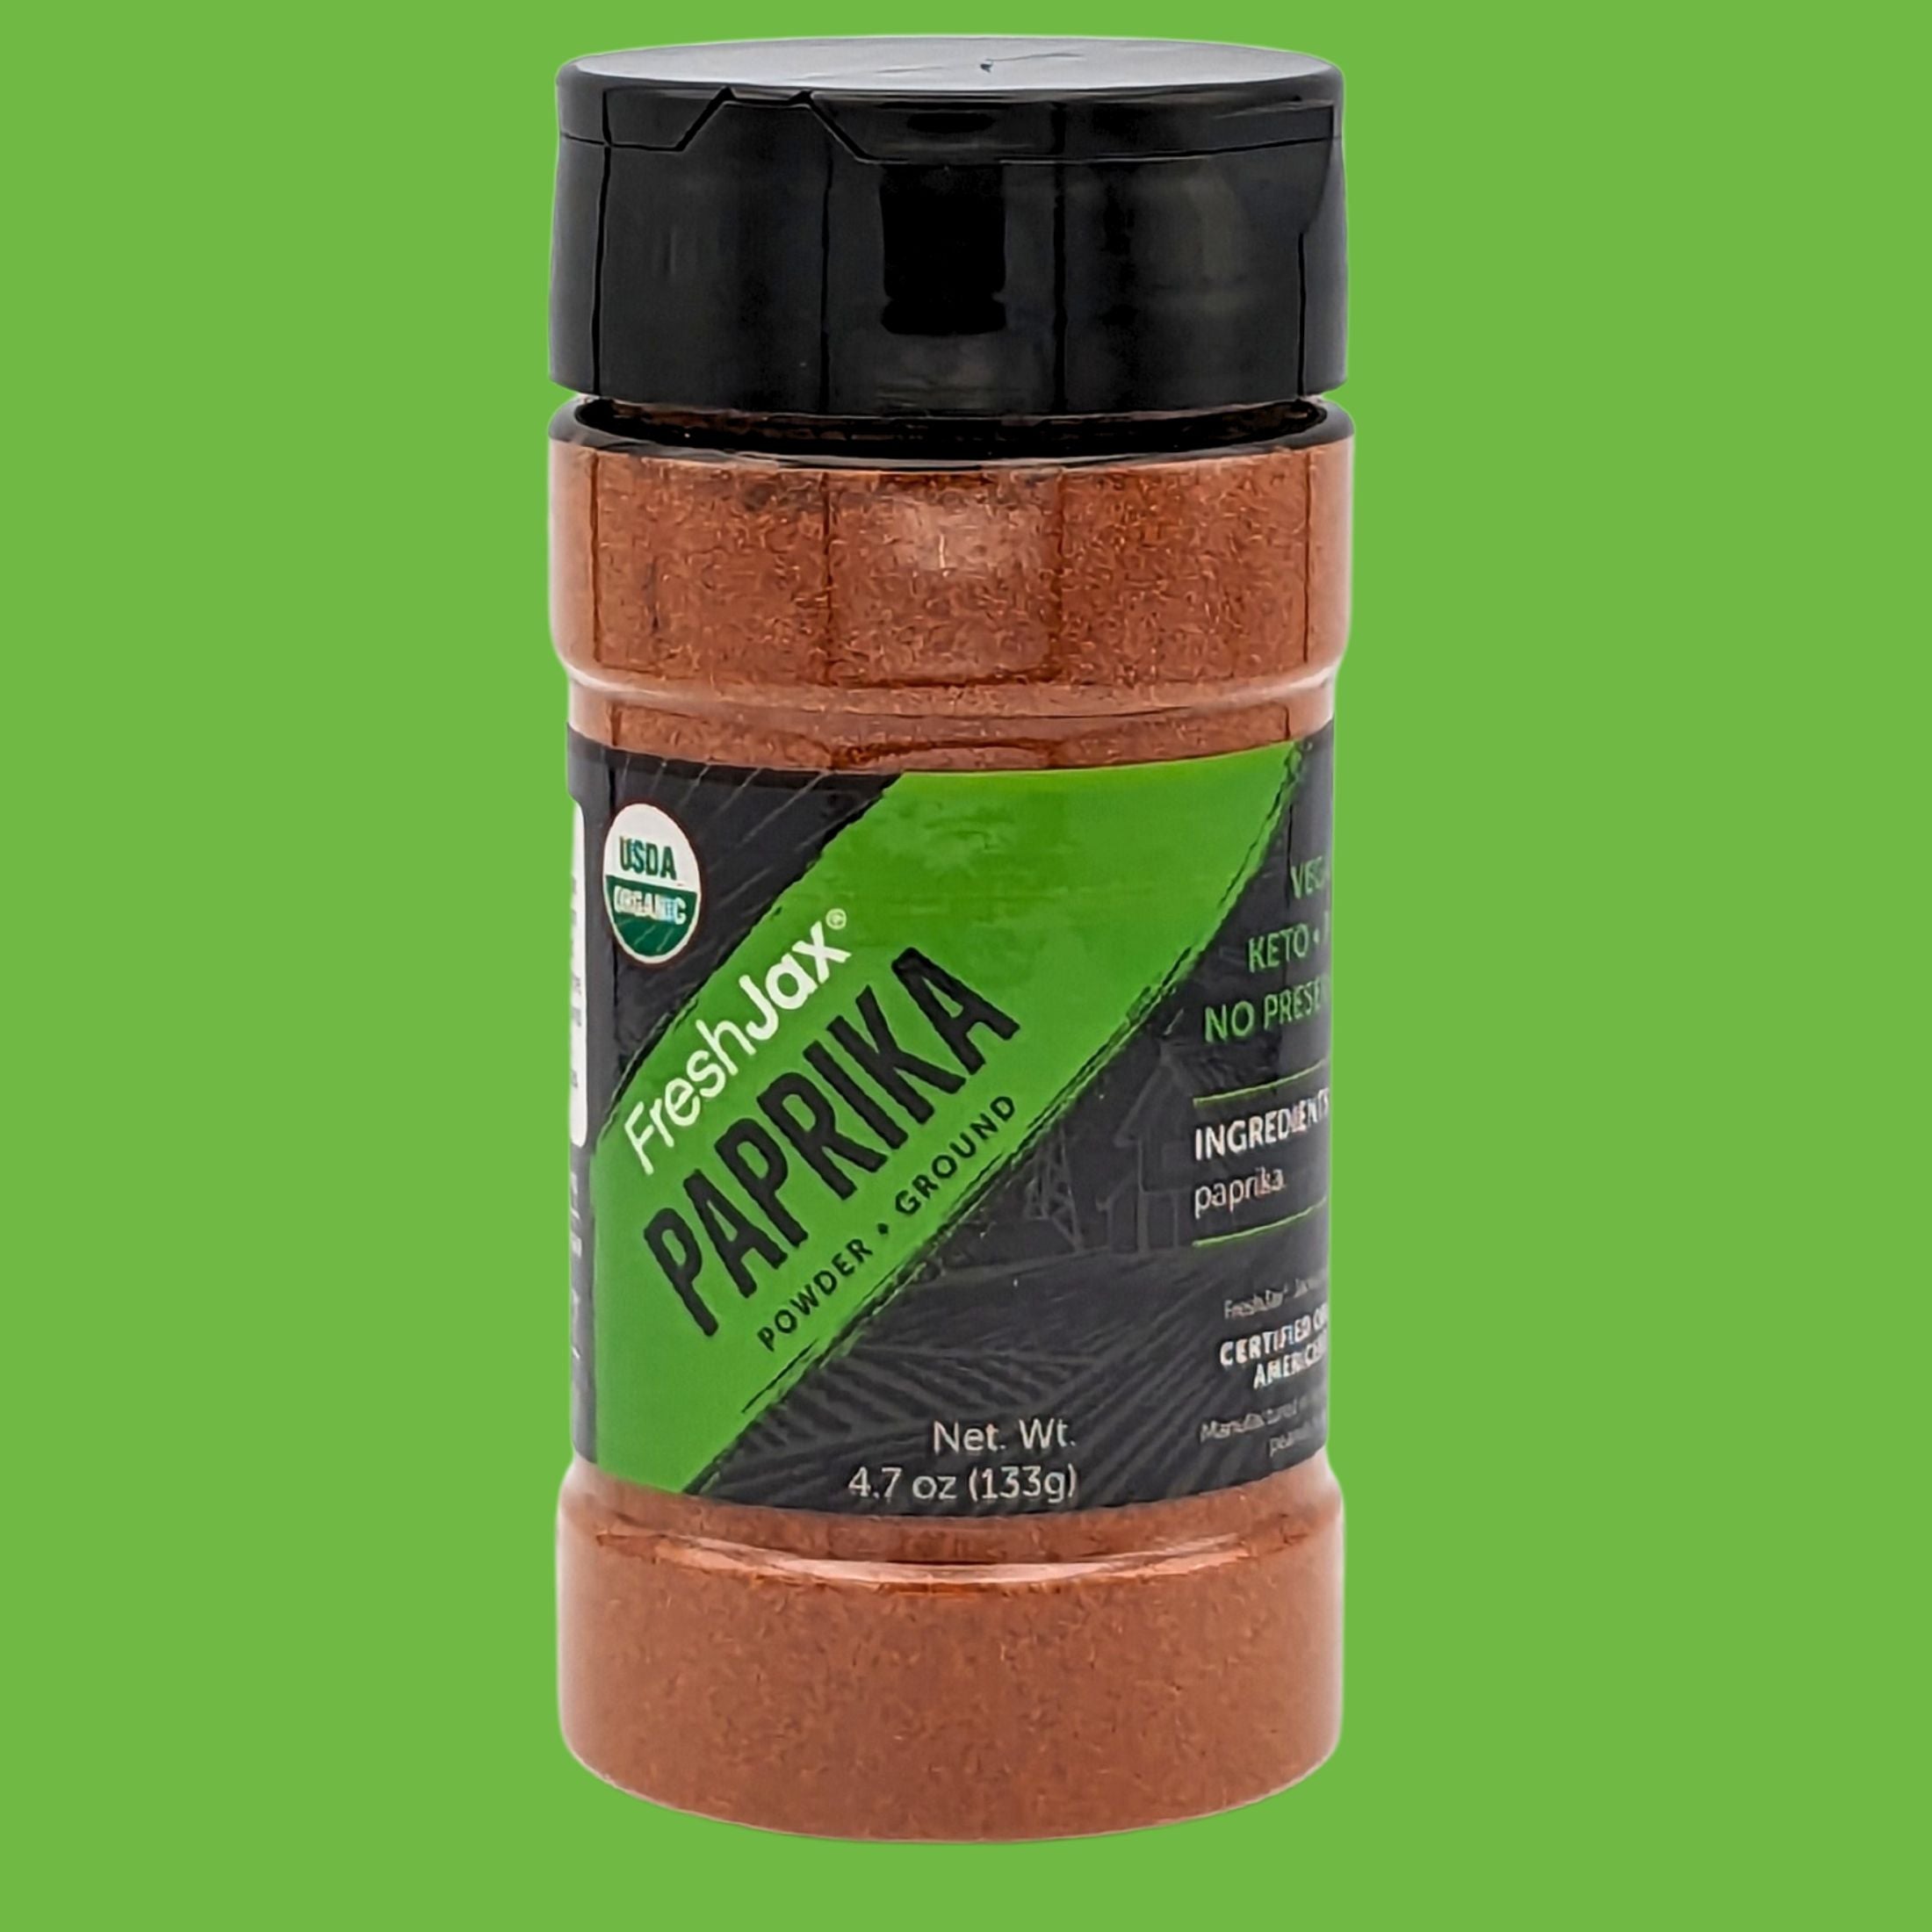 FreshJax Organic Spices : Ground Paprika Powder